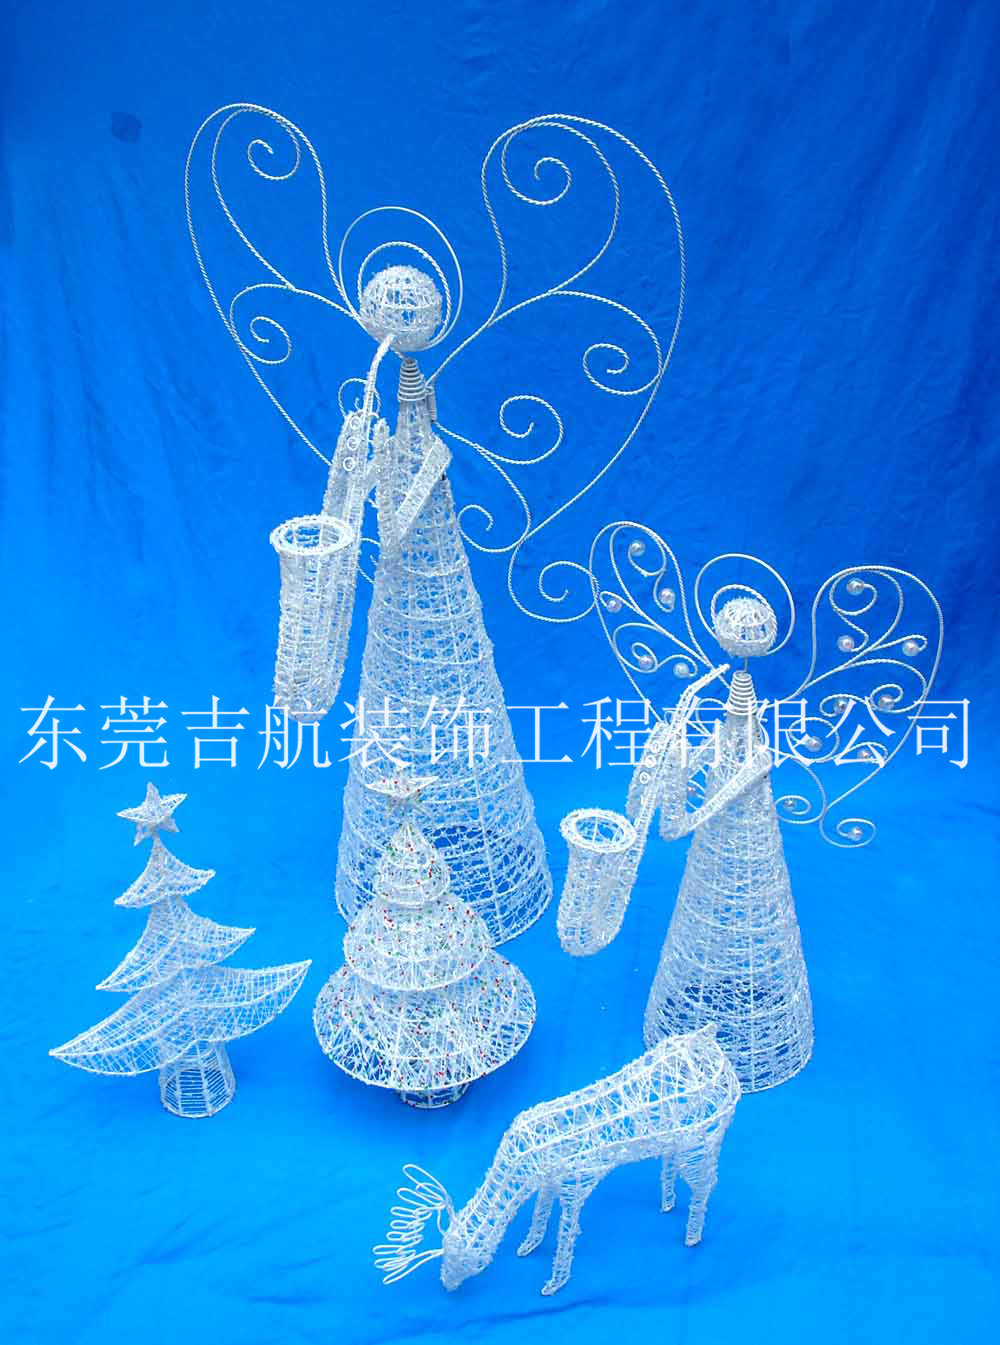 圣诞天使、LED天使大型花灯制作节庆花灯图片